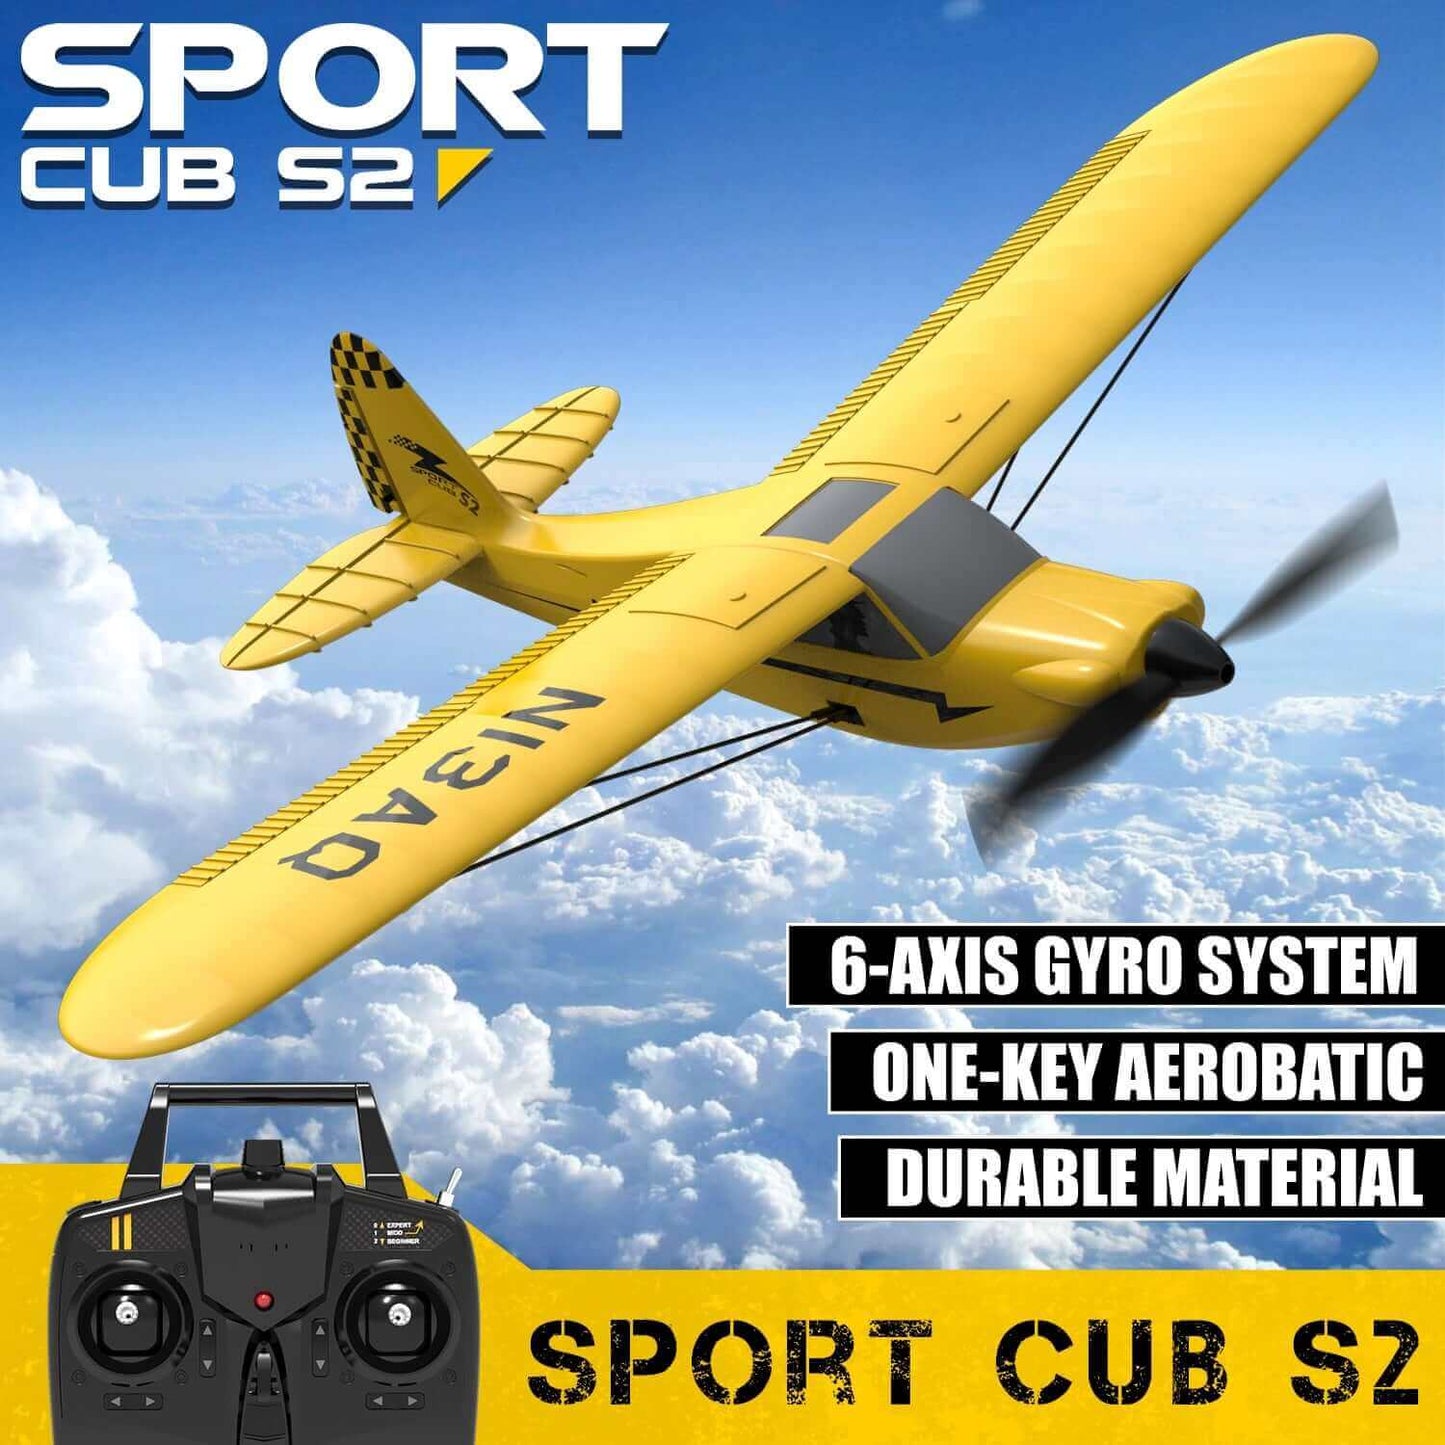 Sport Cub S2 RC Airplane con Gyro Stabilizer - 2.4G 3CH Remote Control Plane - RTF EPP Foam Aircrafts